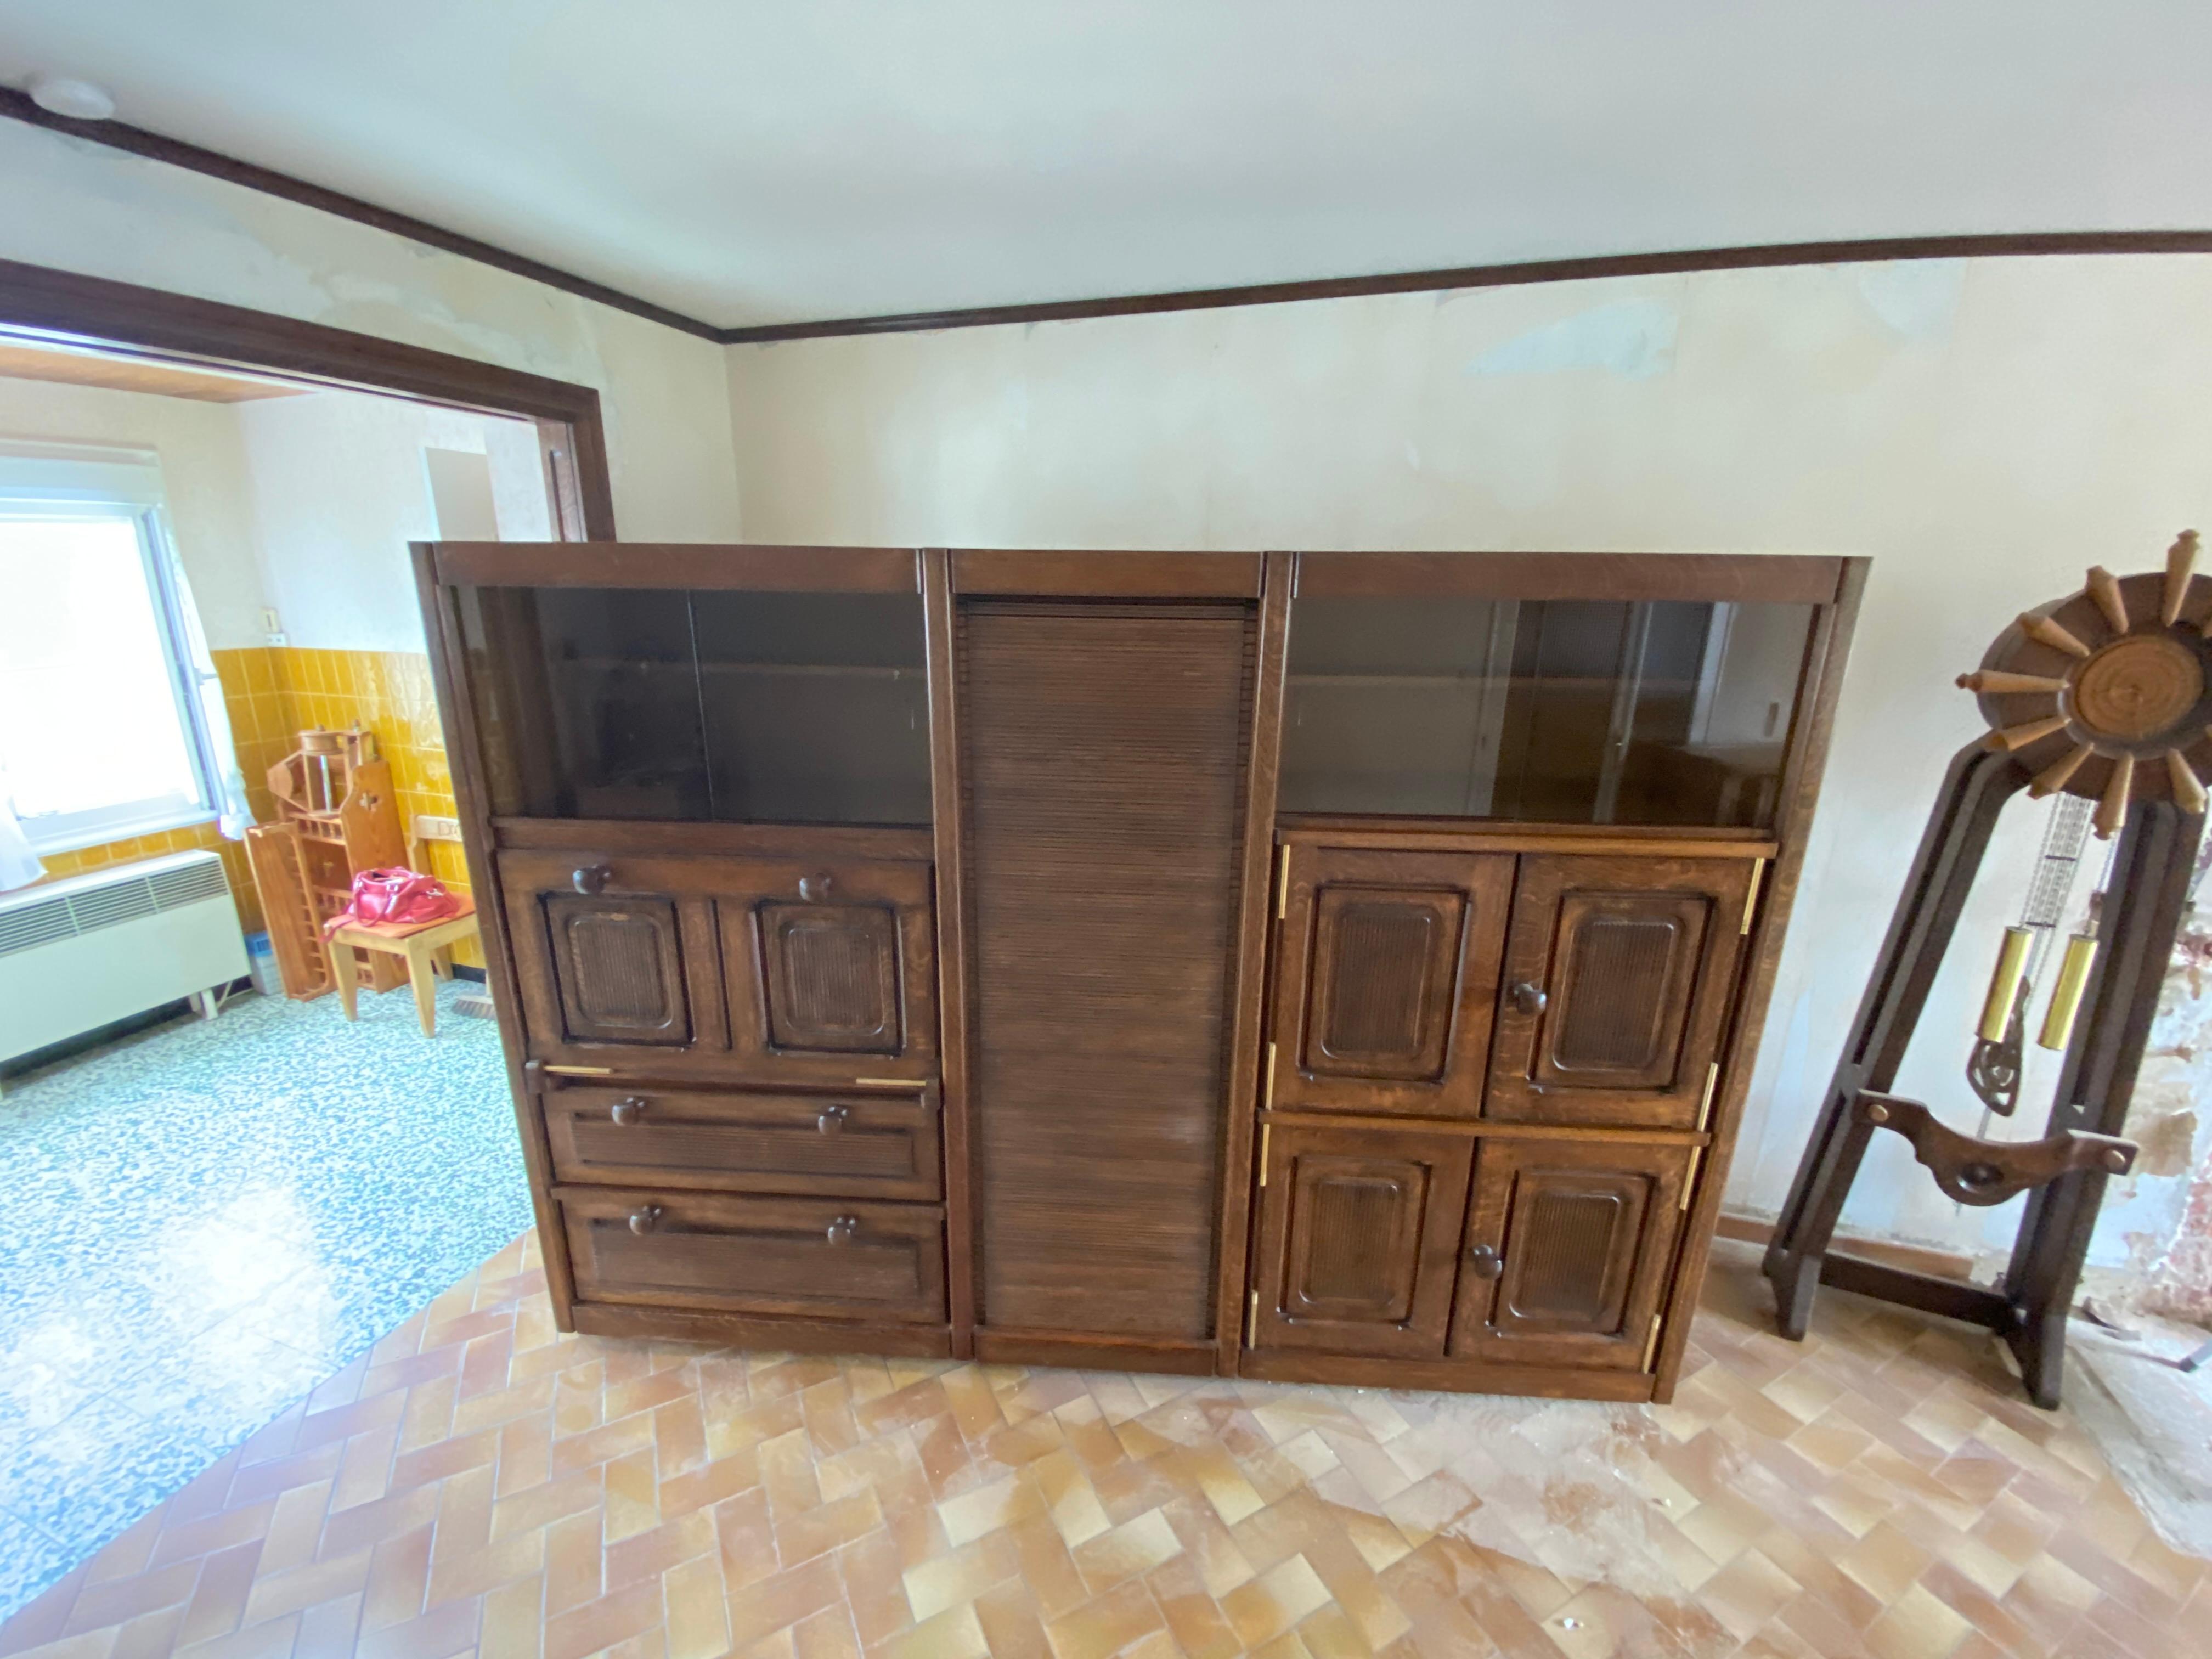 Guillerme et Chambron Original Cabinet in Oak Votre Maison Edition In Good Condition For Sale In Saint-Ouen, FR